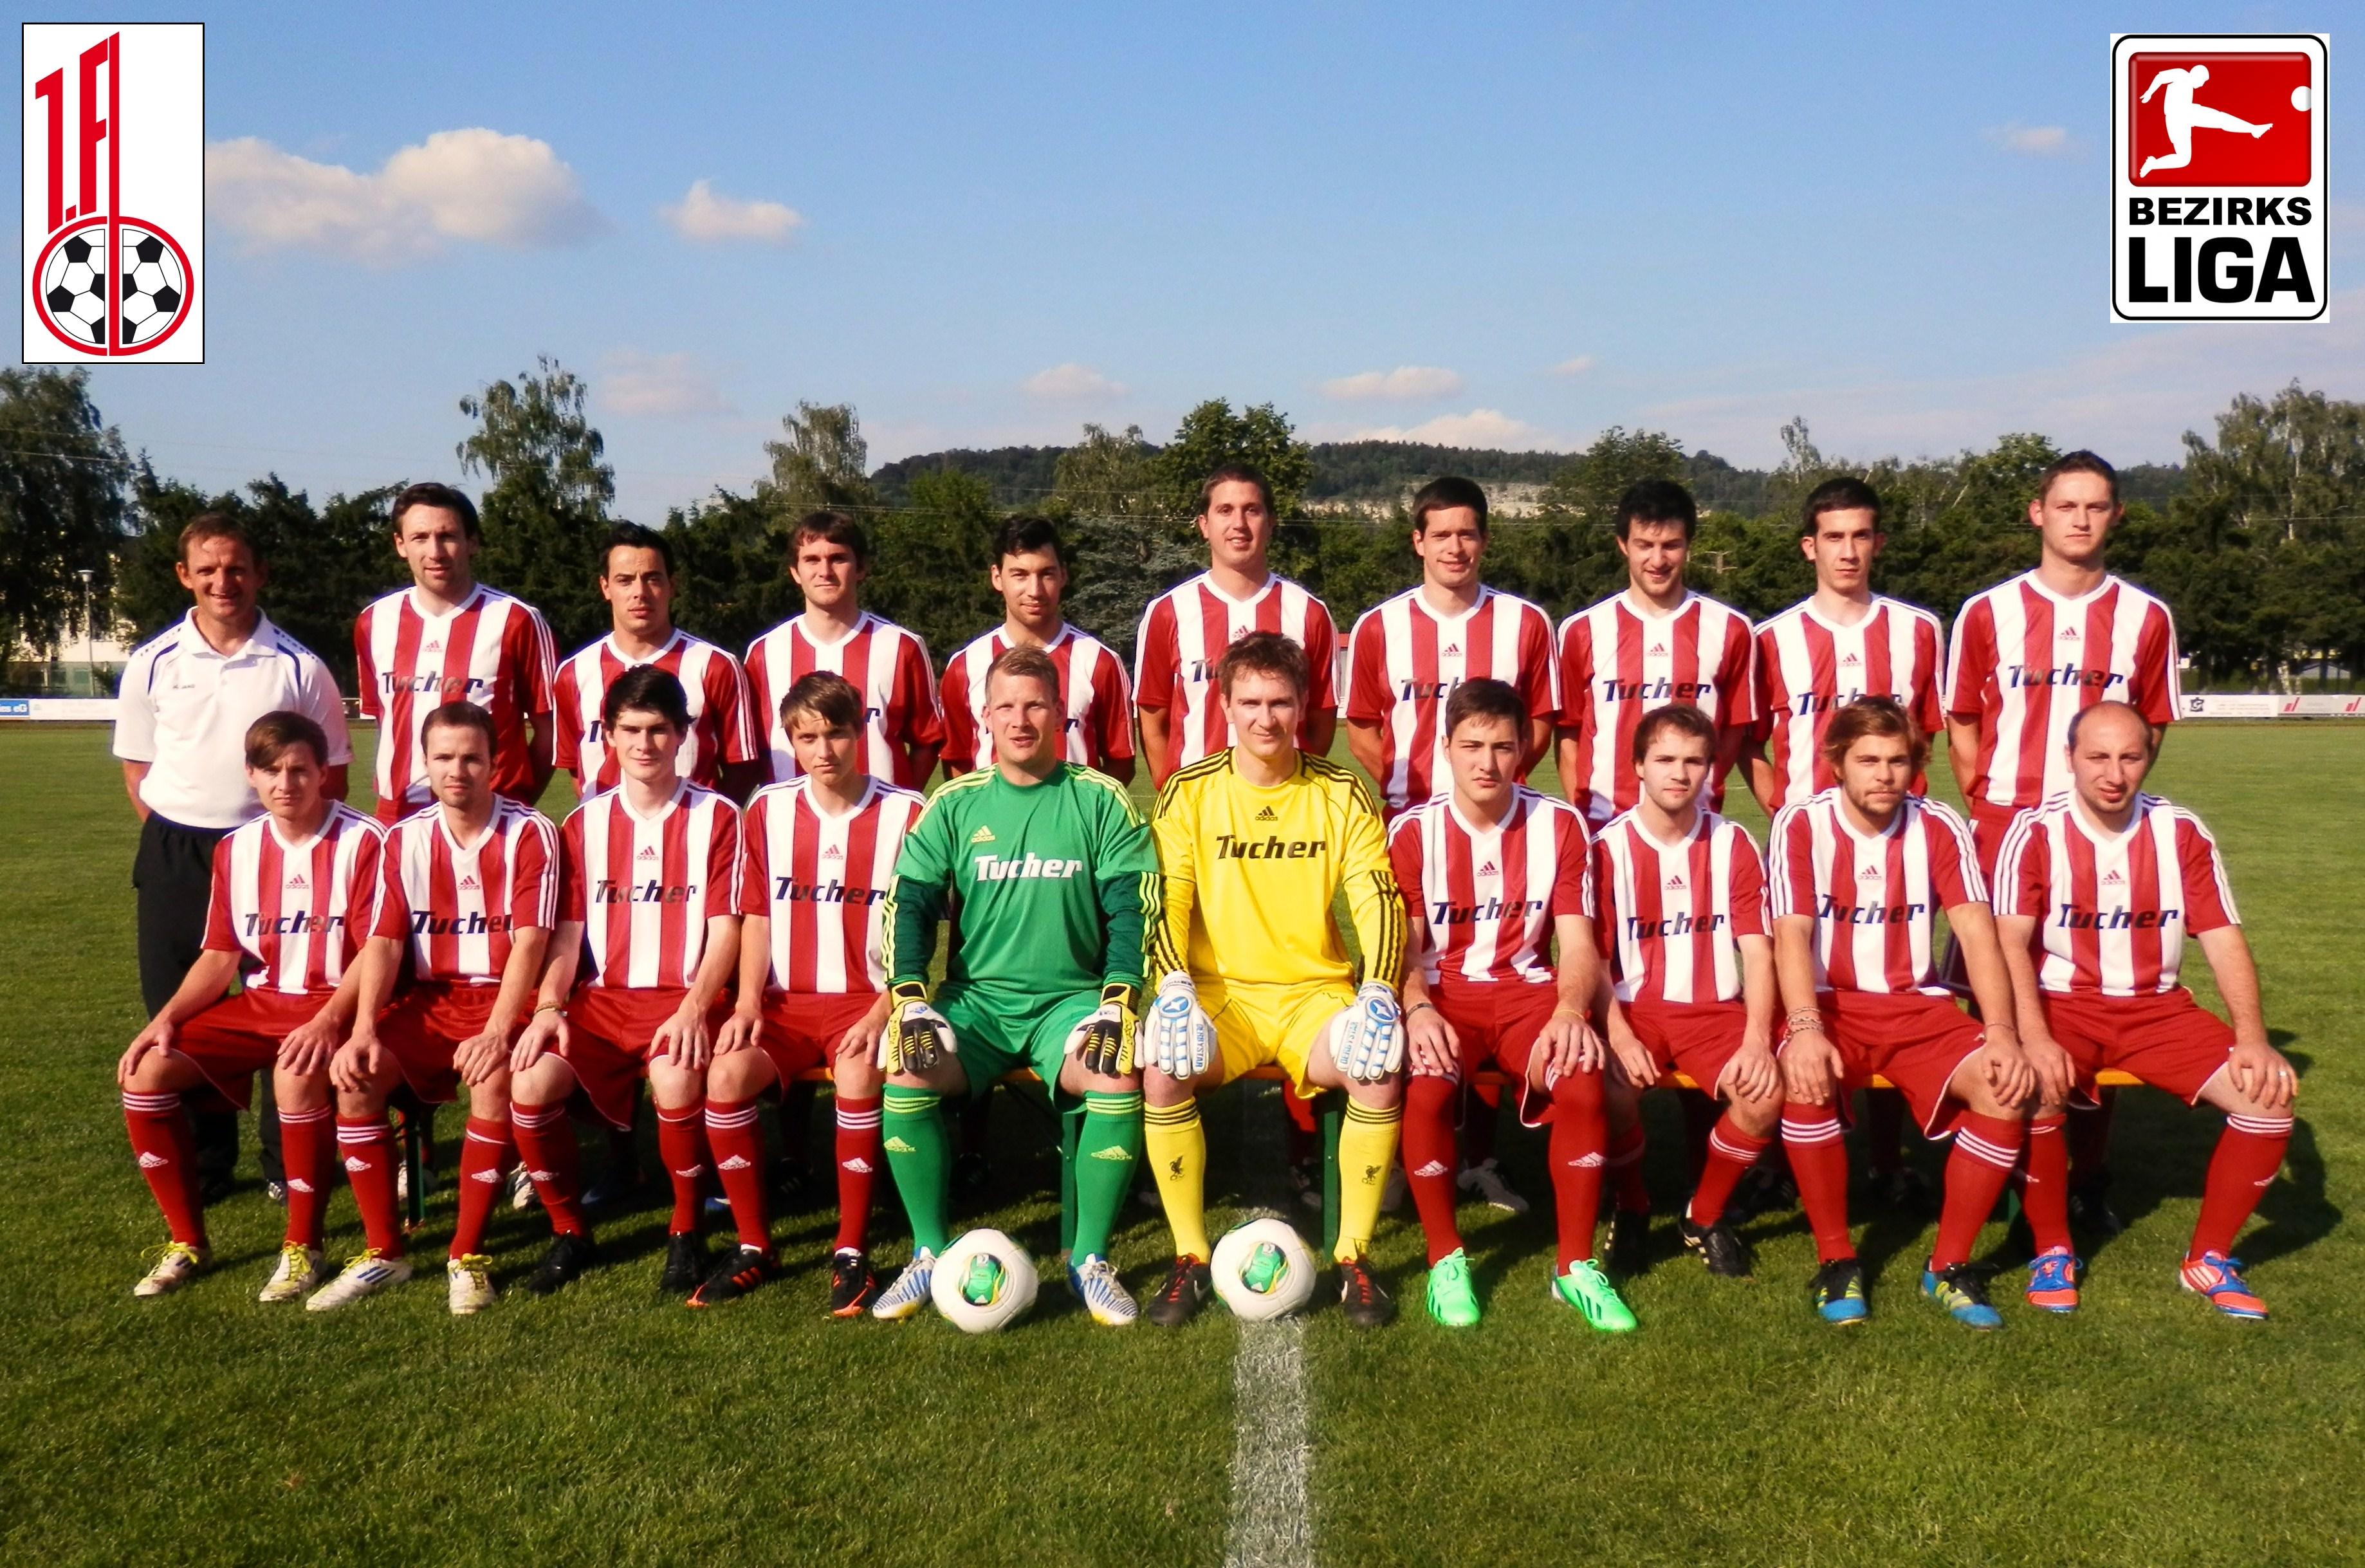 Mannschaftsfoto/Teamfoto von 1. FC Beilngries